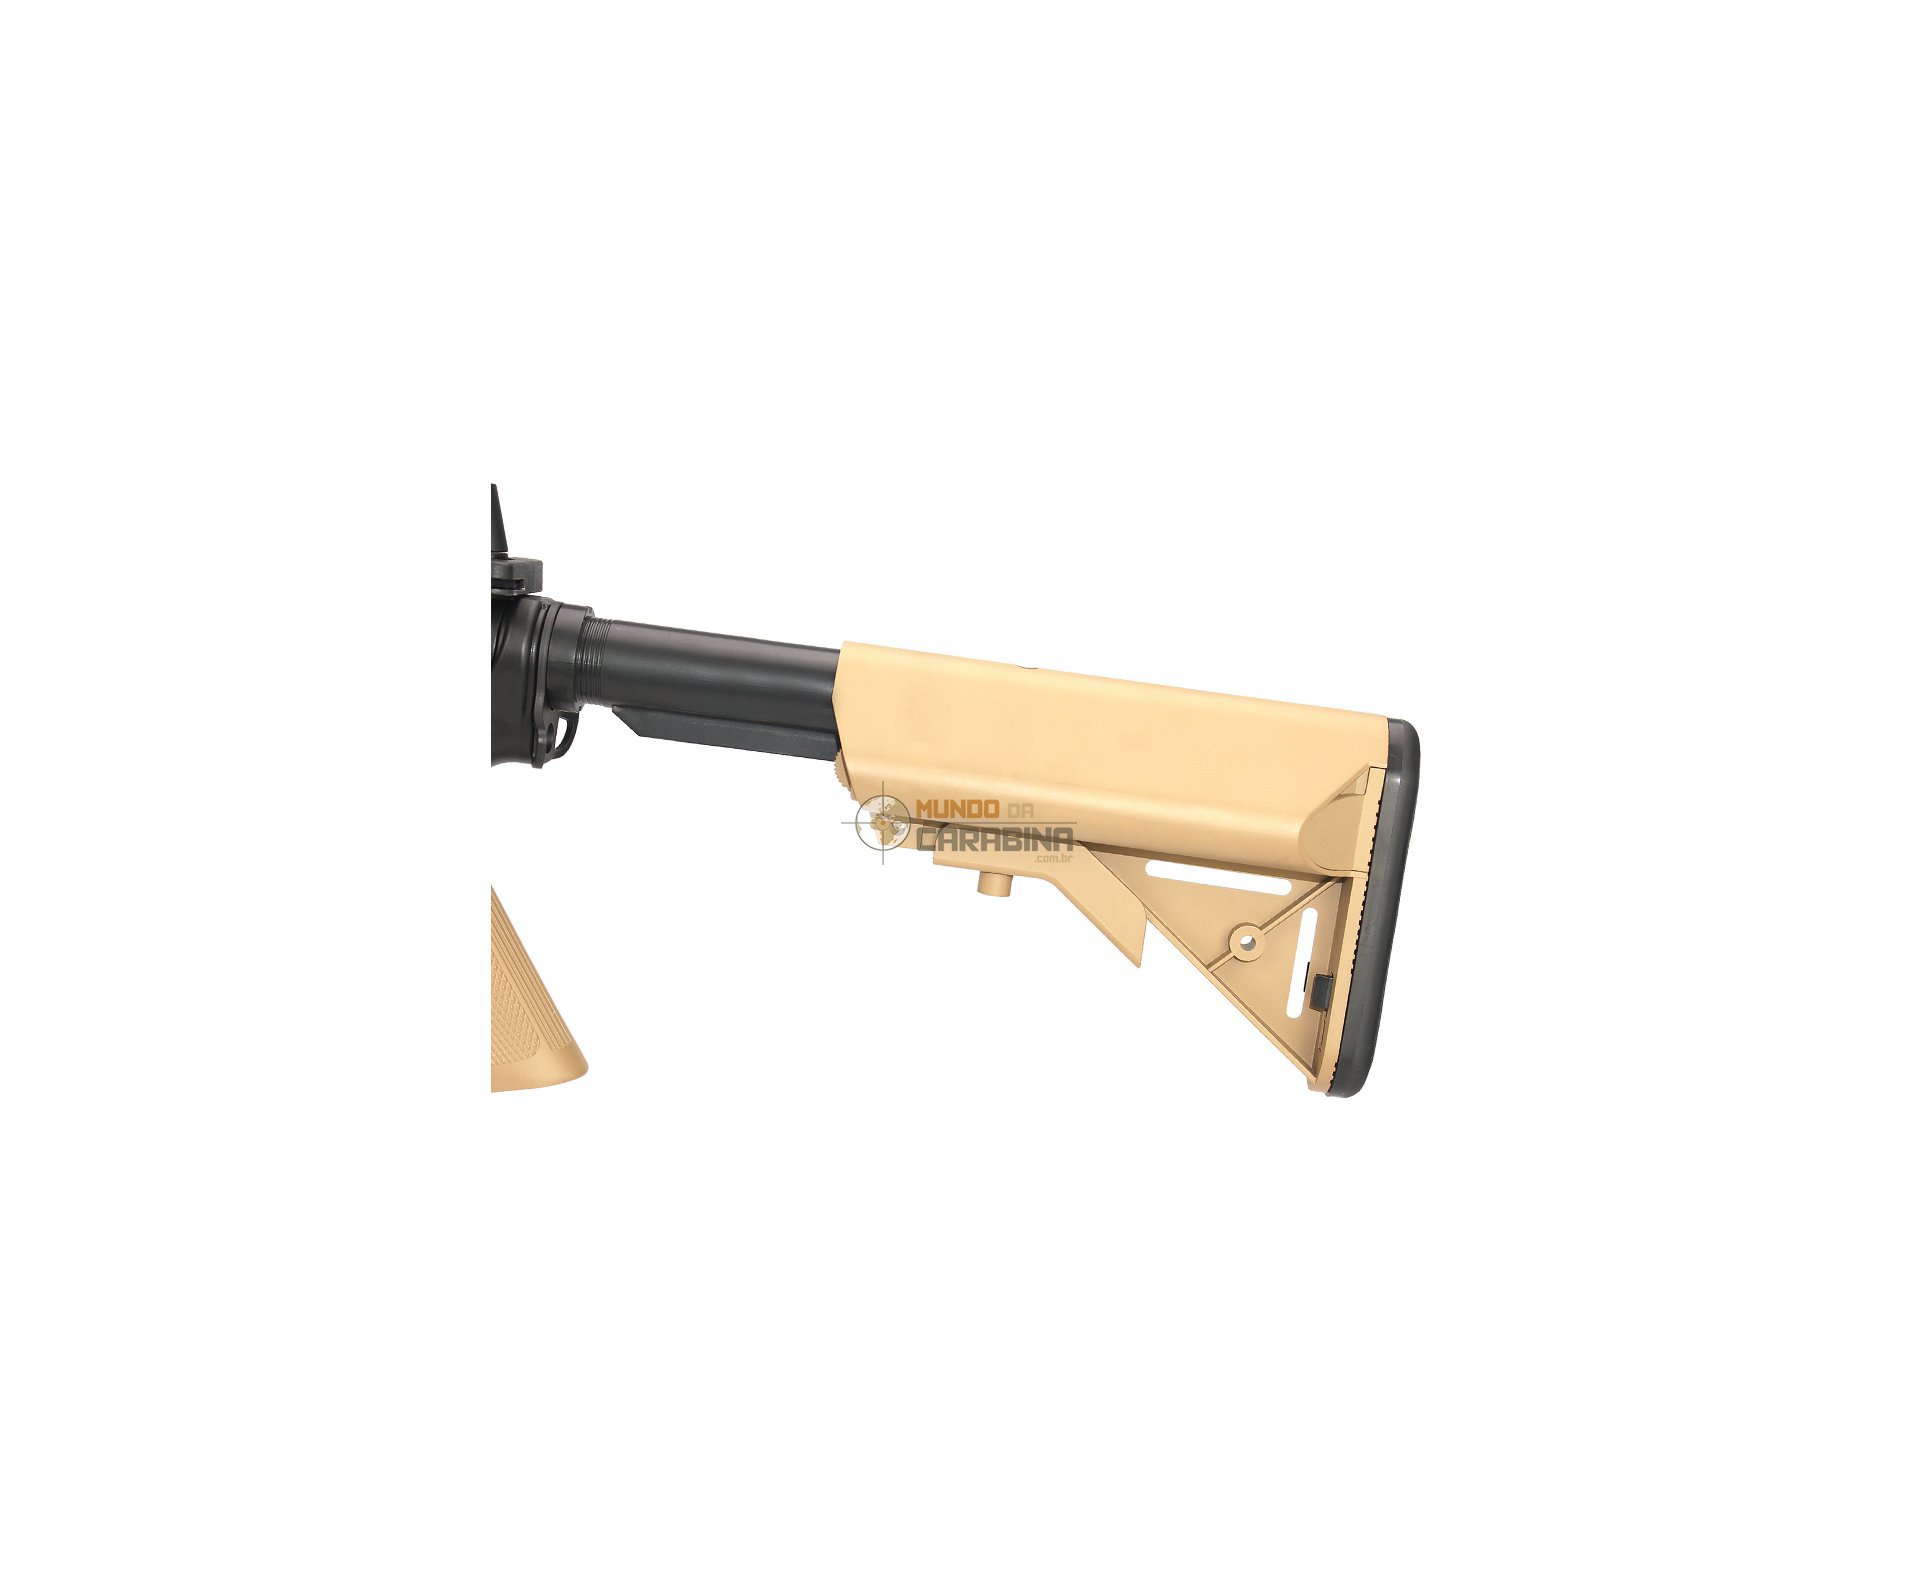 Rifle De Airsoft Colt M4 Ris Cqb Semi Metal Aeg - Edição Marcos Do Val - Cybergun - 110 V